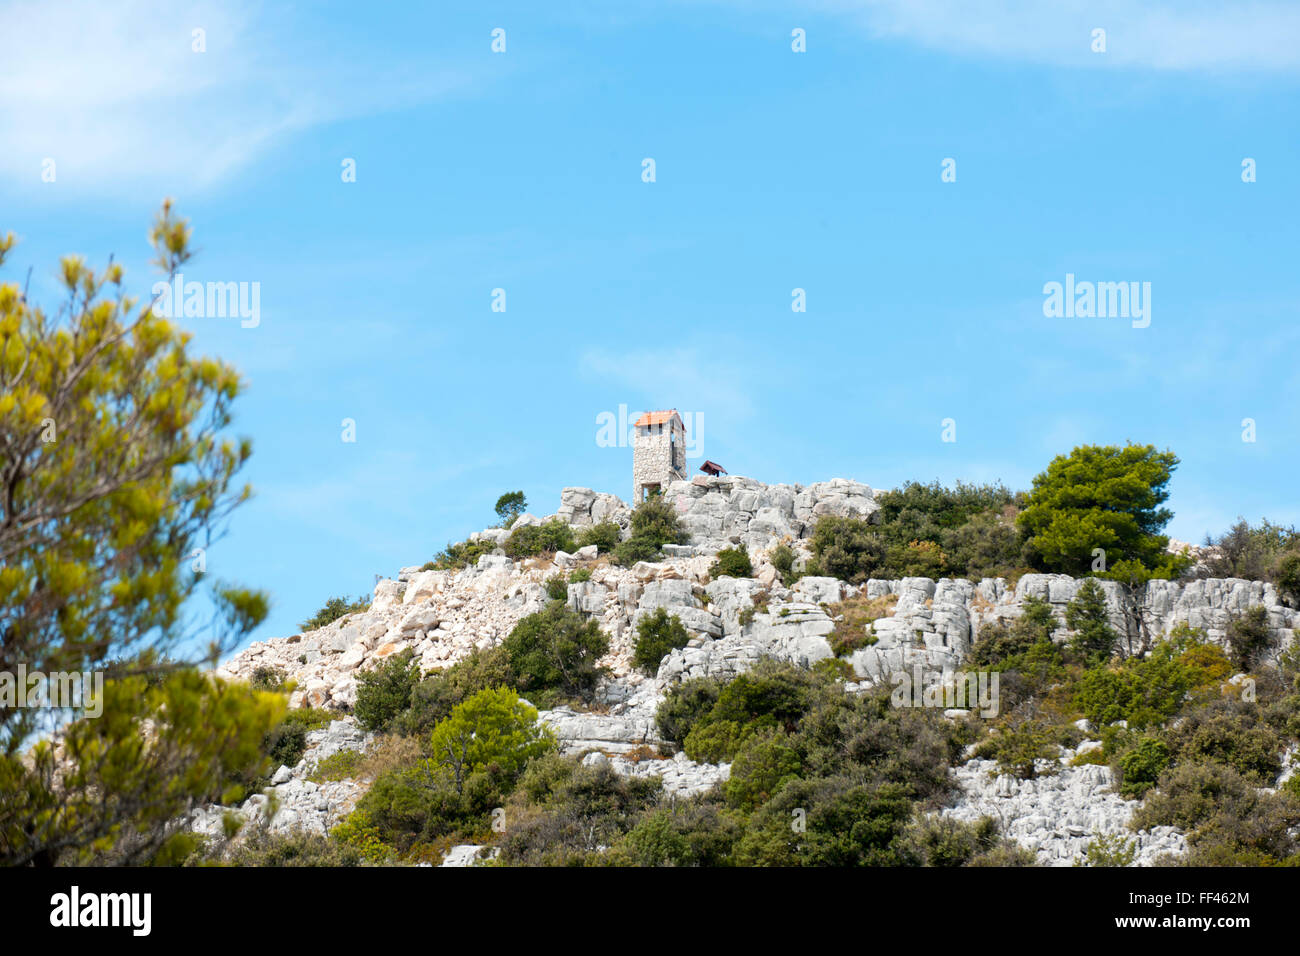 Kroatien, Dalmatien, Insel Pasman, Steinhaus an der Panoramastrasse Stock Photo